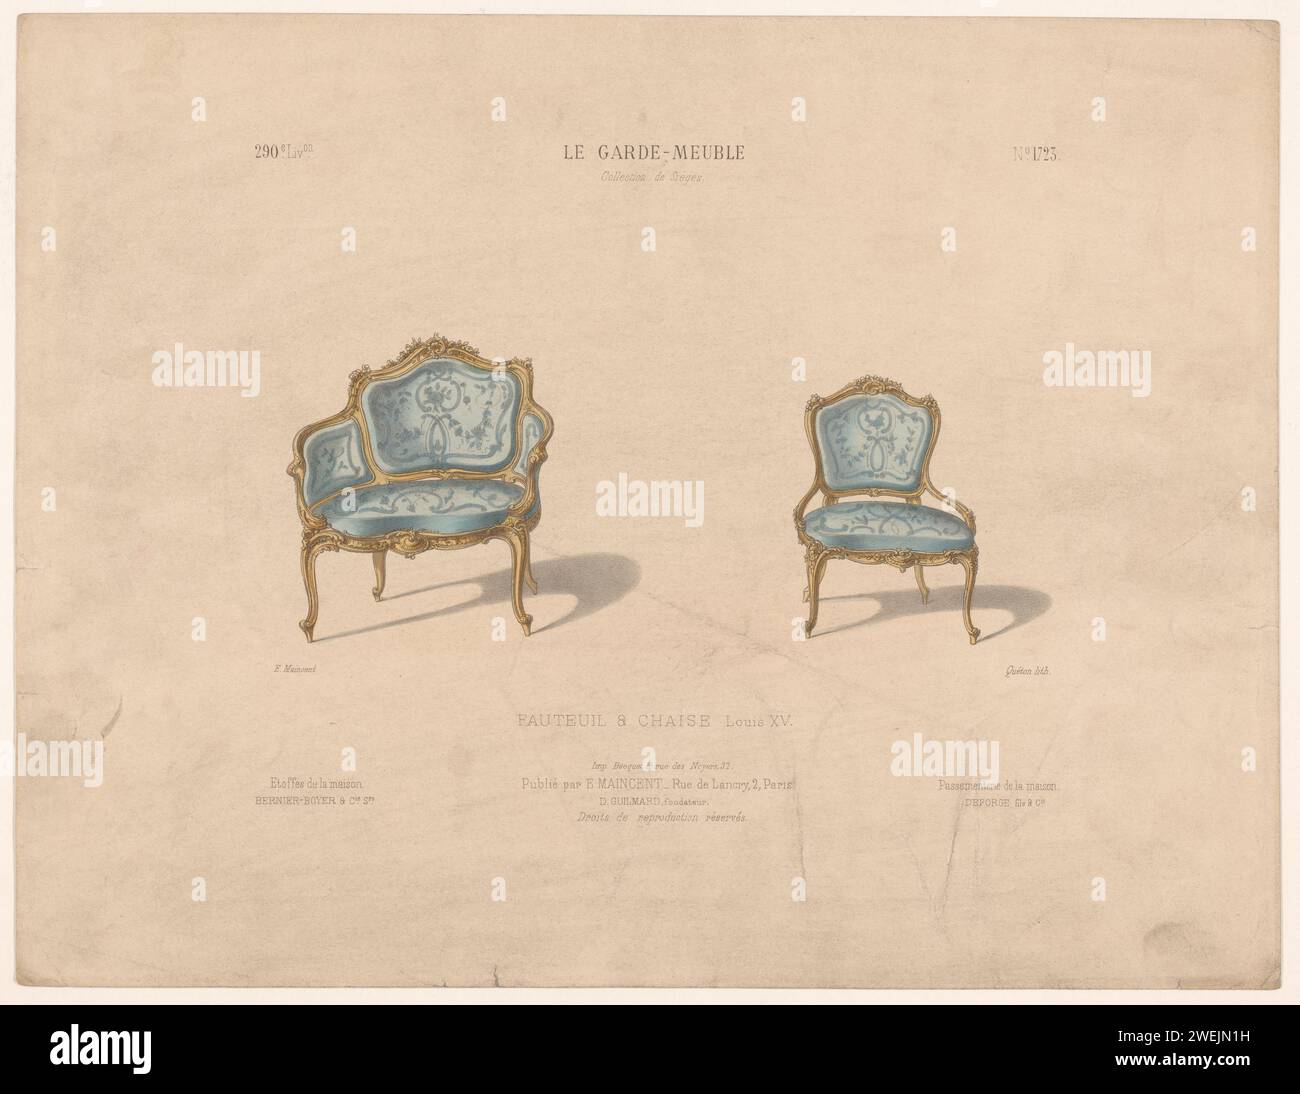 Sessel und Stuhl, Quéton, 1885 - 1895 Druck Sessel und Stuhl im Louis XV Stil. Drucken Sie aus dem 290. Livraison. Papiermöbel Stockfoto